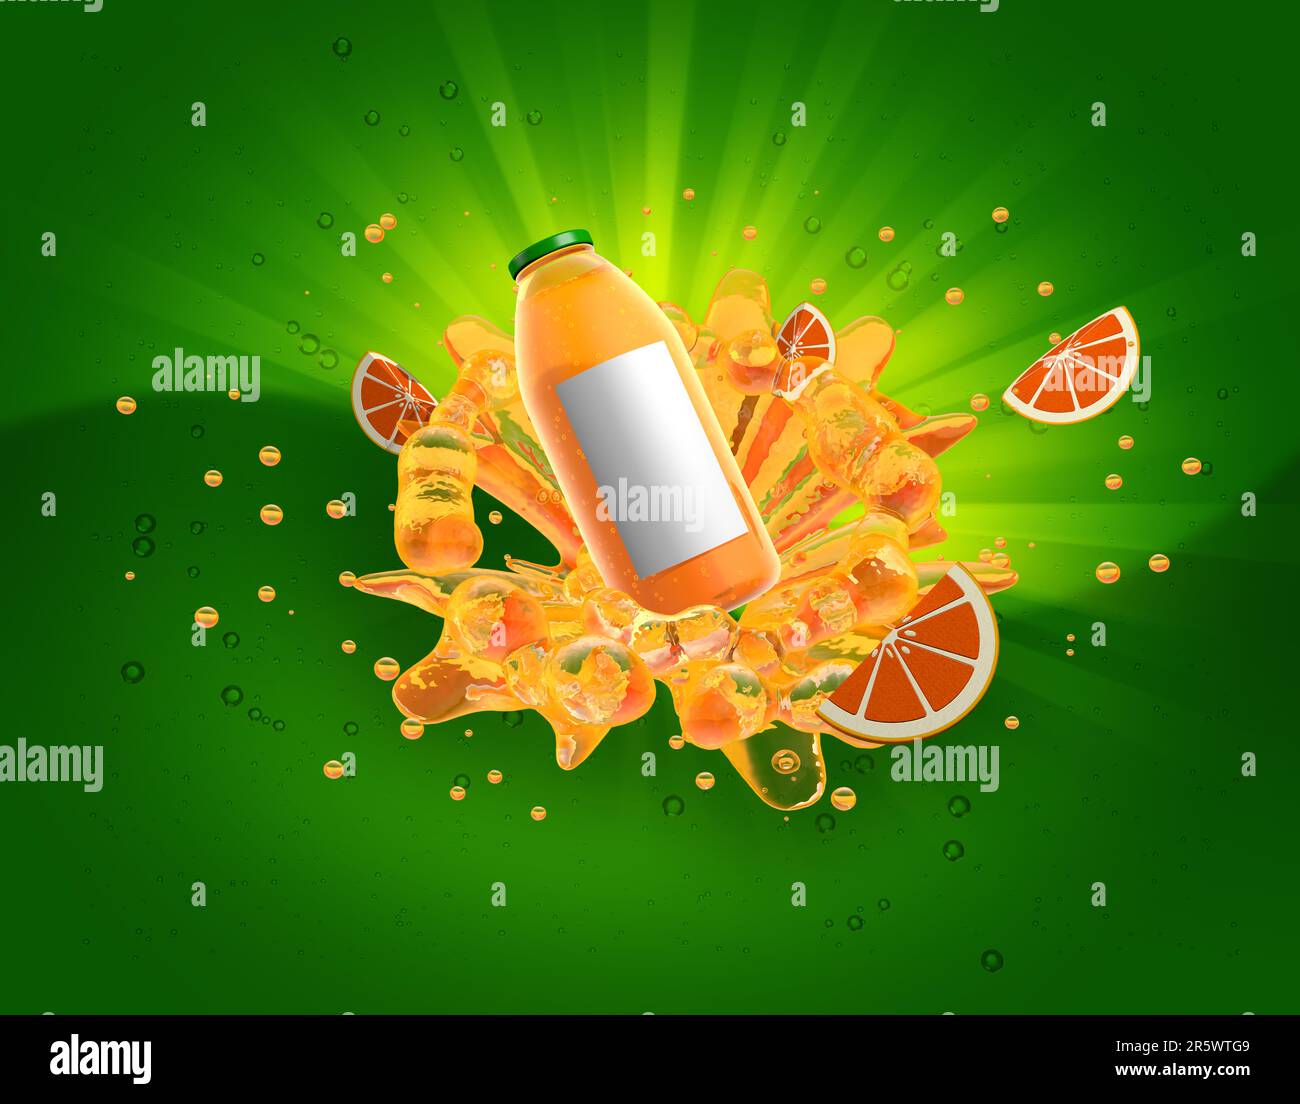 Bottiglia di succo d'arancia con tappo verde che spruzzi di liquido arancione circondato da bolle e fette di arancio su sfondo verde con luce gialla che arriva o Foto Stock